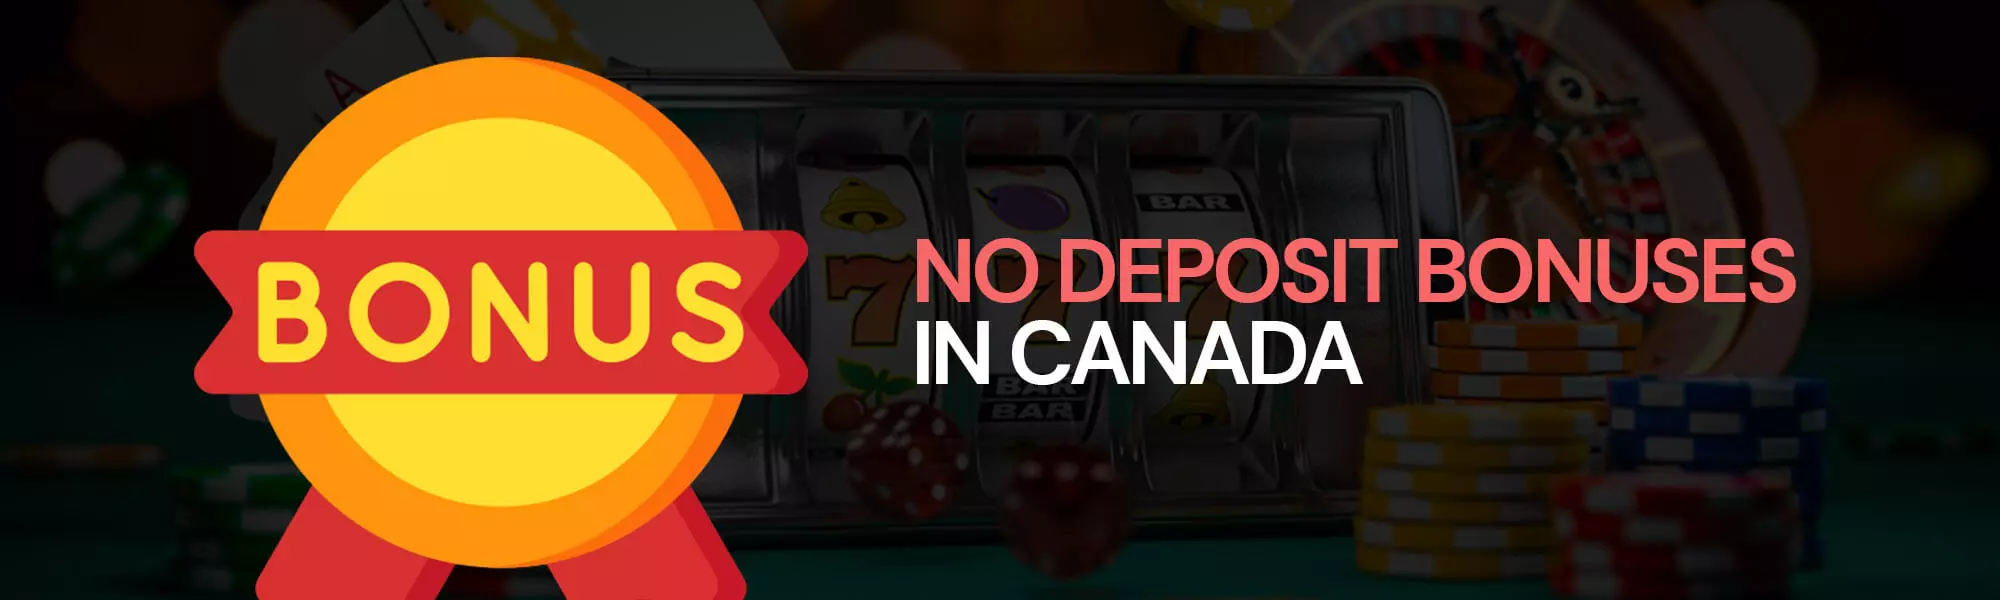 No deposit casino bonus Canada